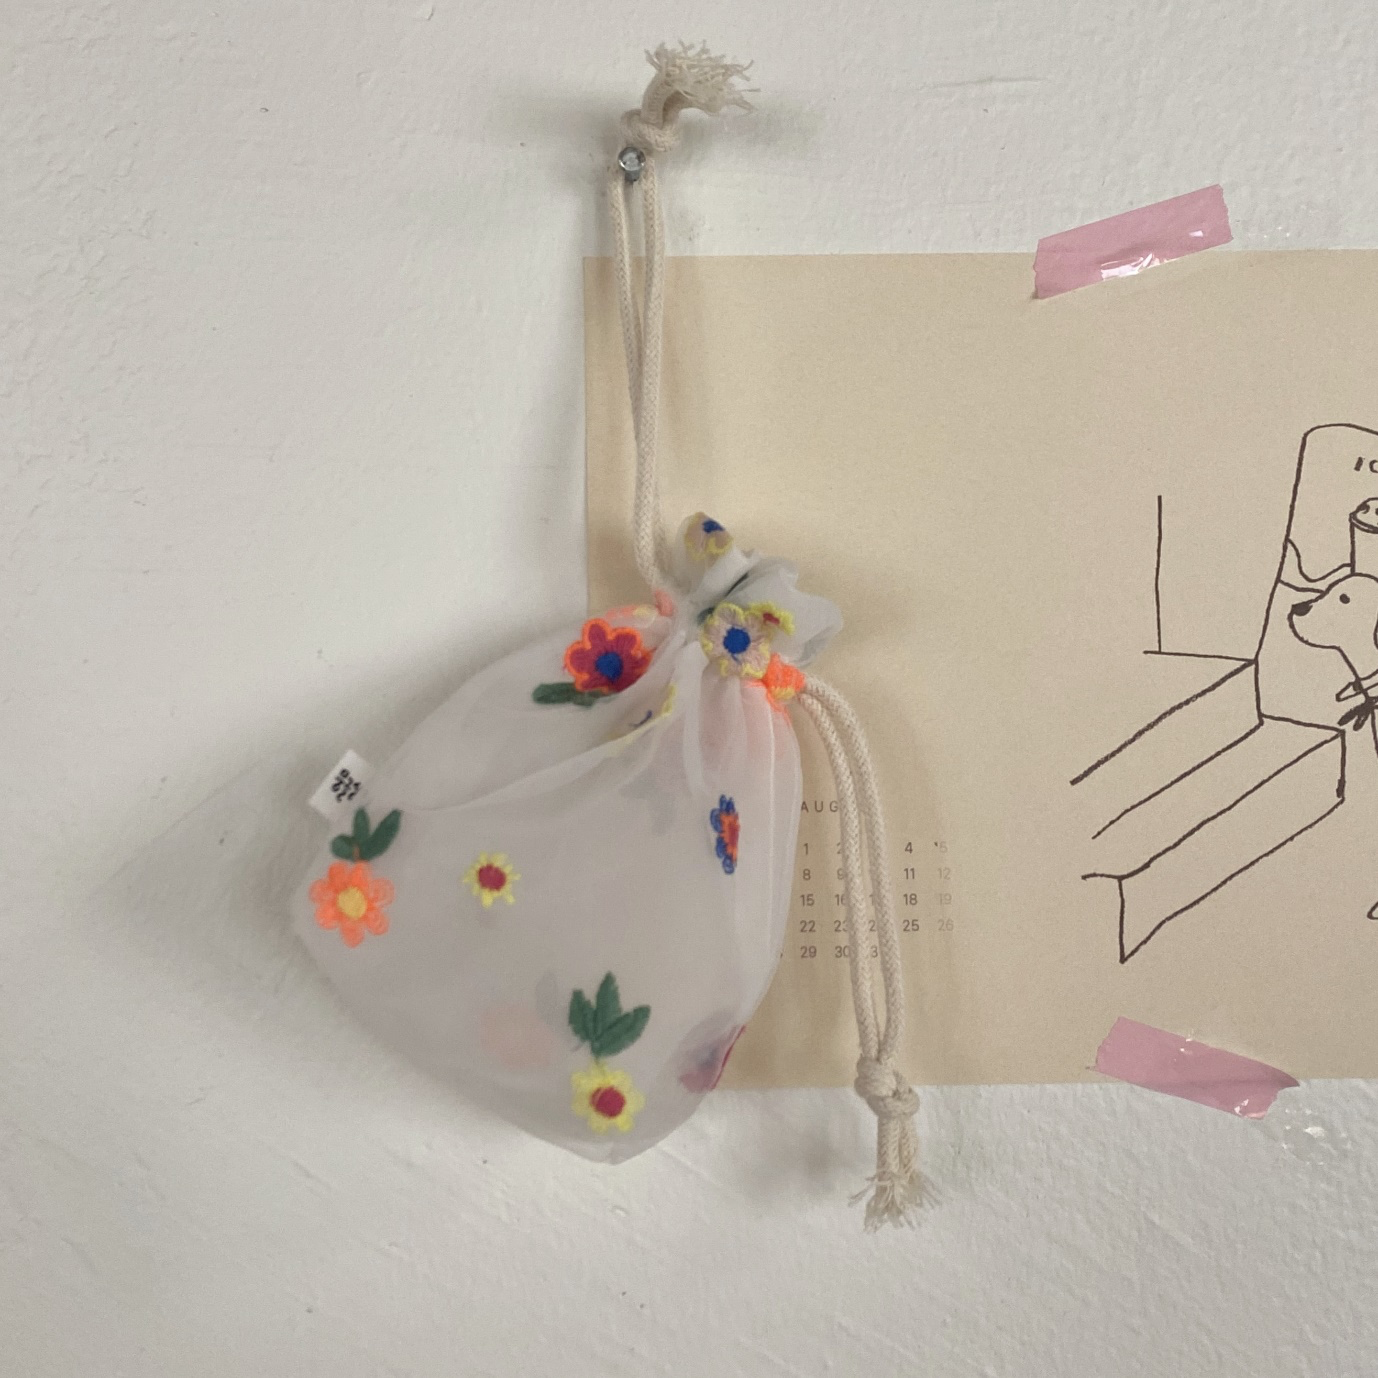 아동 미술, 눈사람, 예술, 실내이(가) 표시된 사진

자동 생성된 설명